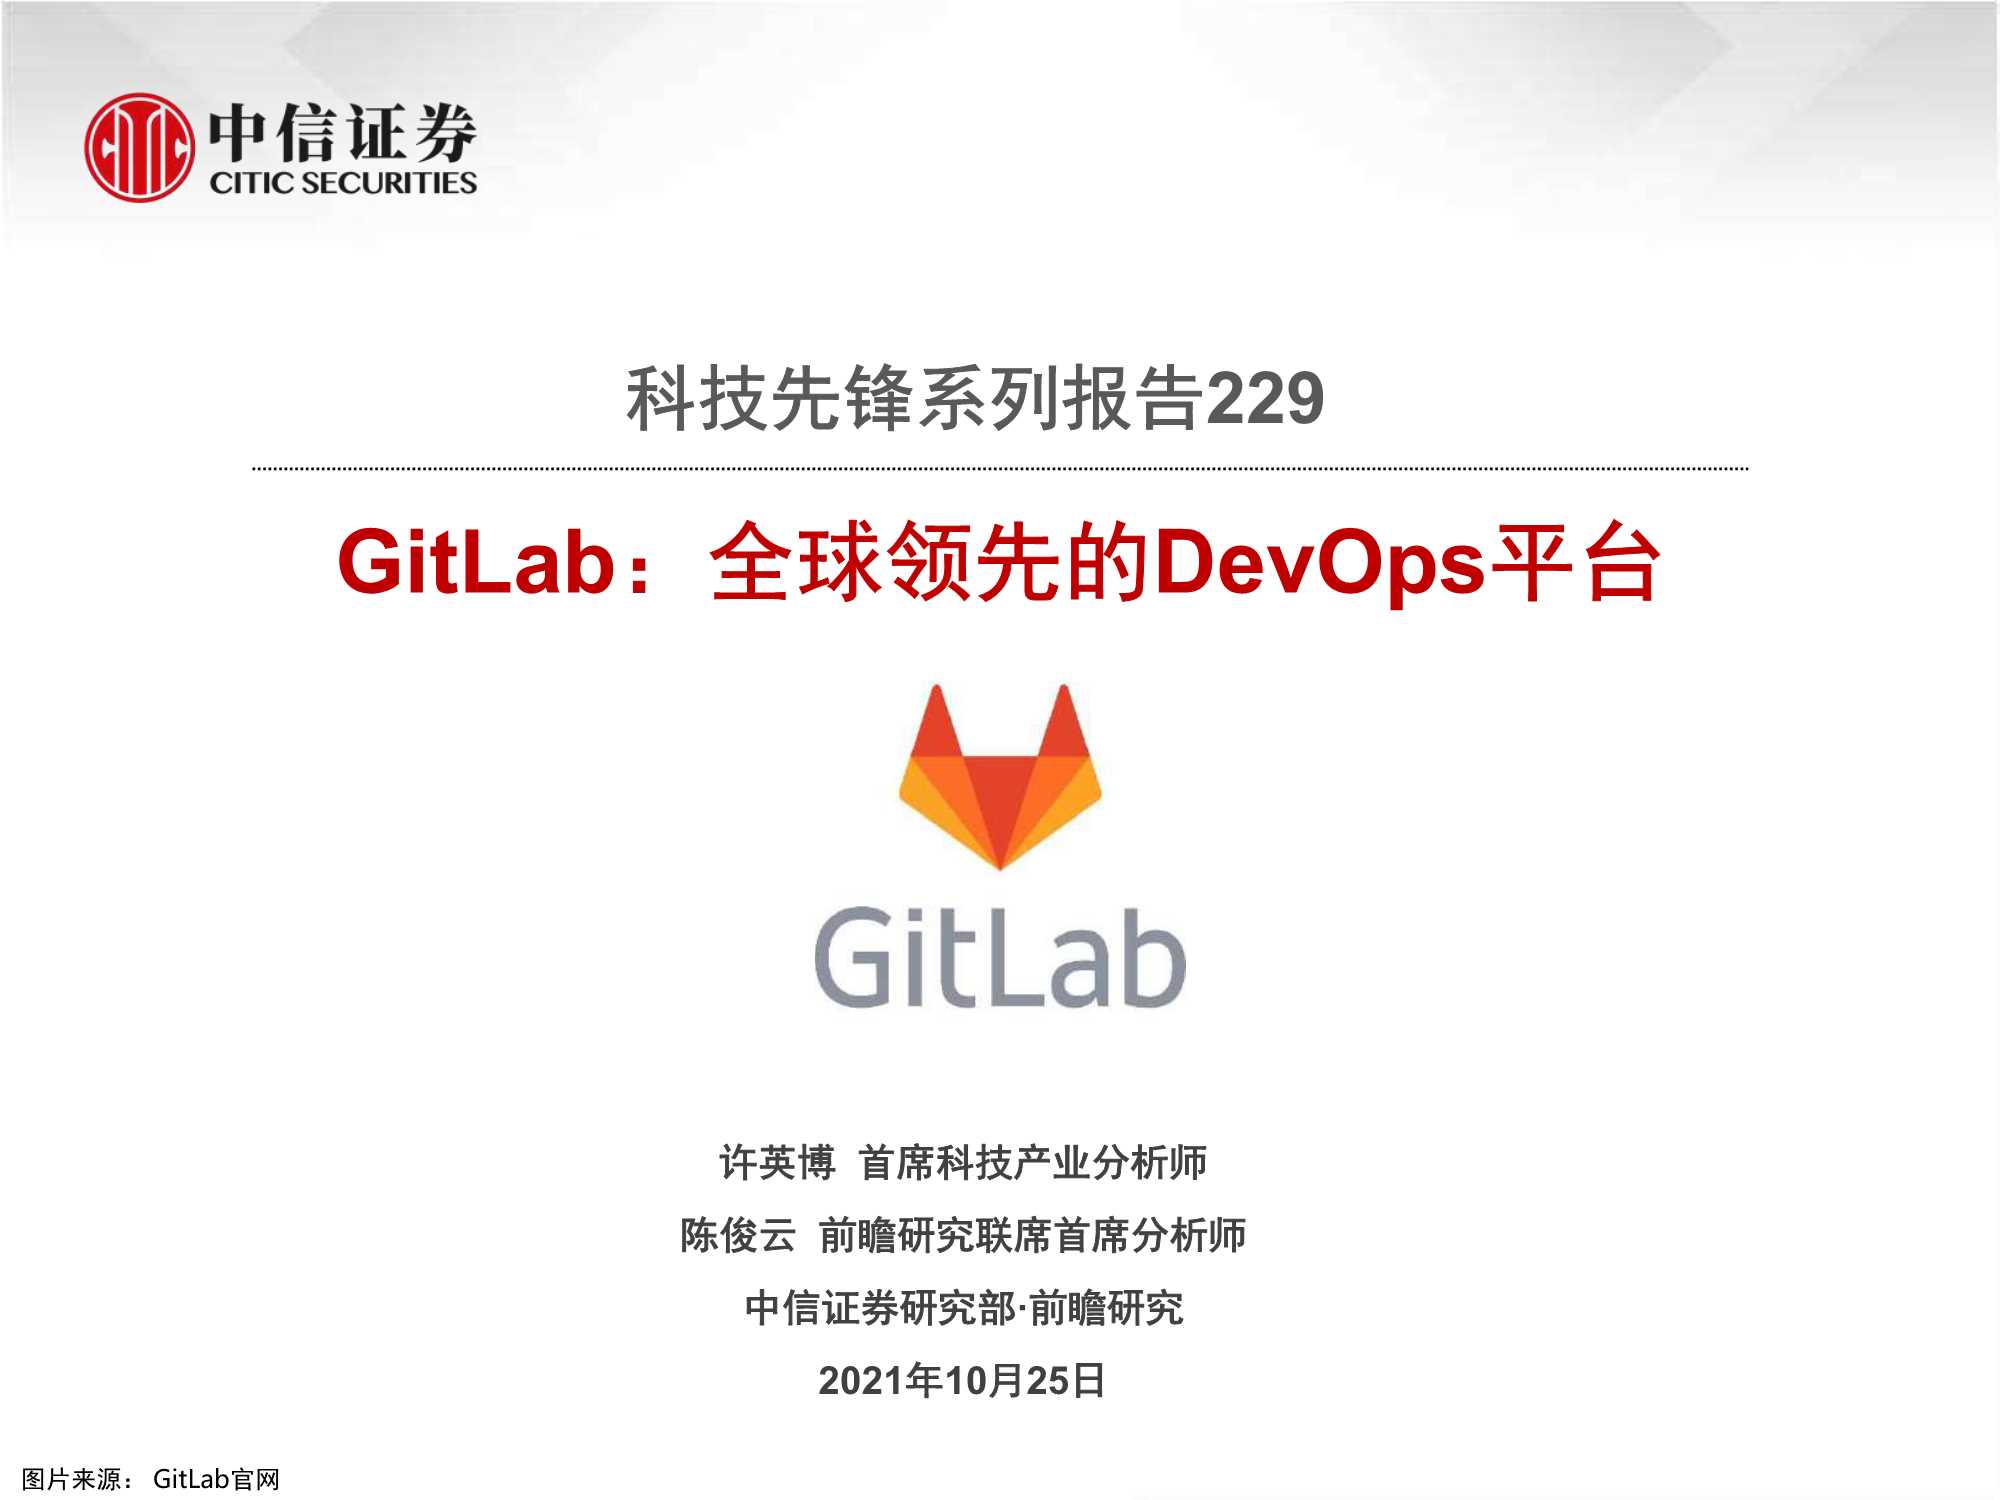 中信证券-科技先锋系列报告229-GitLab：全球领先的DevOps平台-20211025-21页